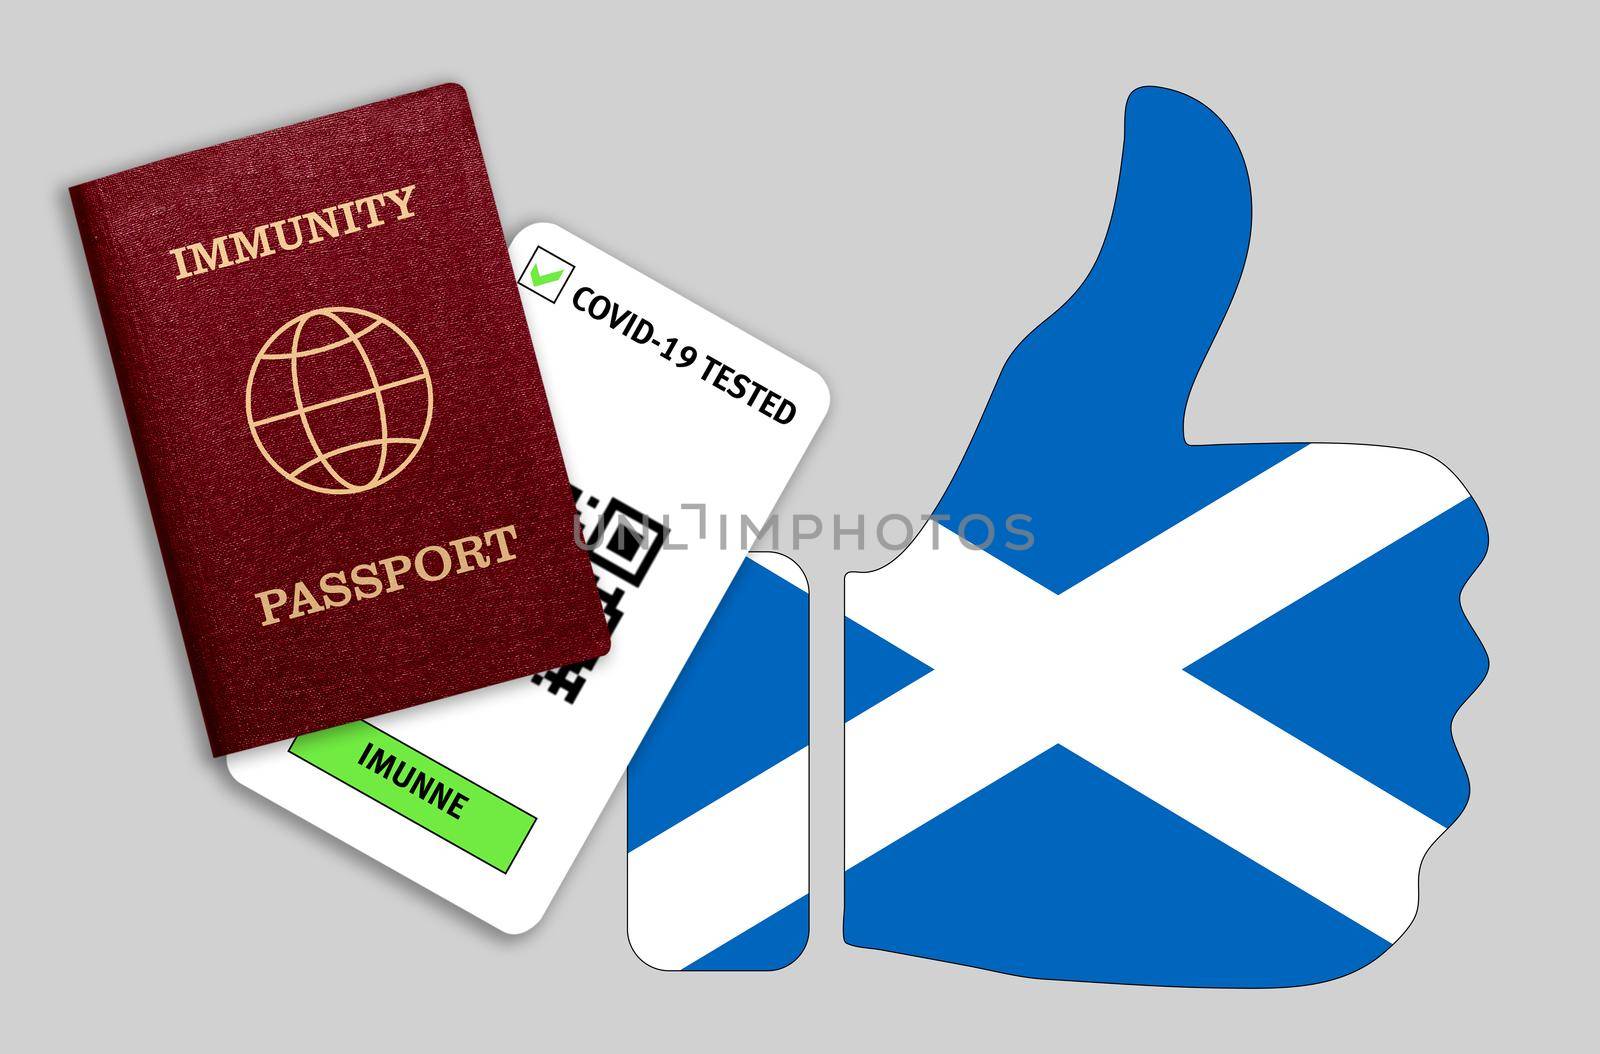 Immune passport and coronavirus test with thumb up with flag of Scotland by galinasharapova